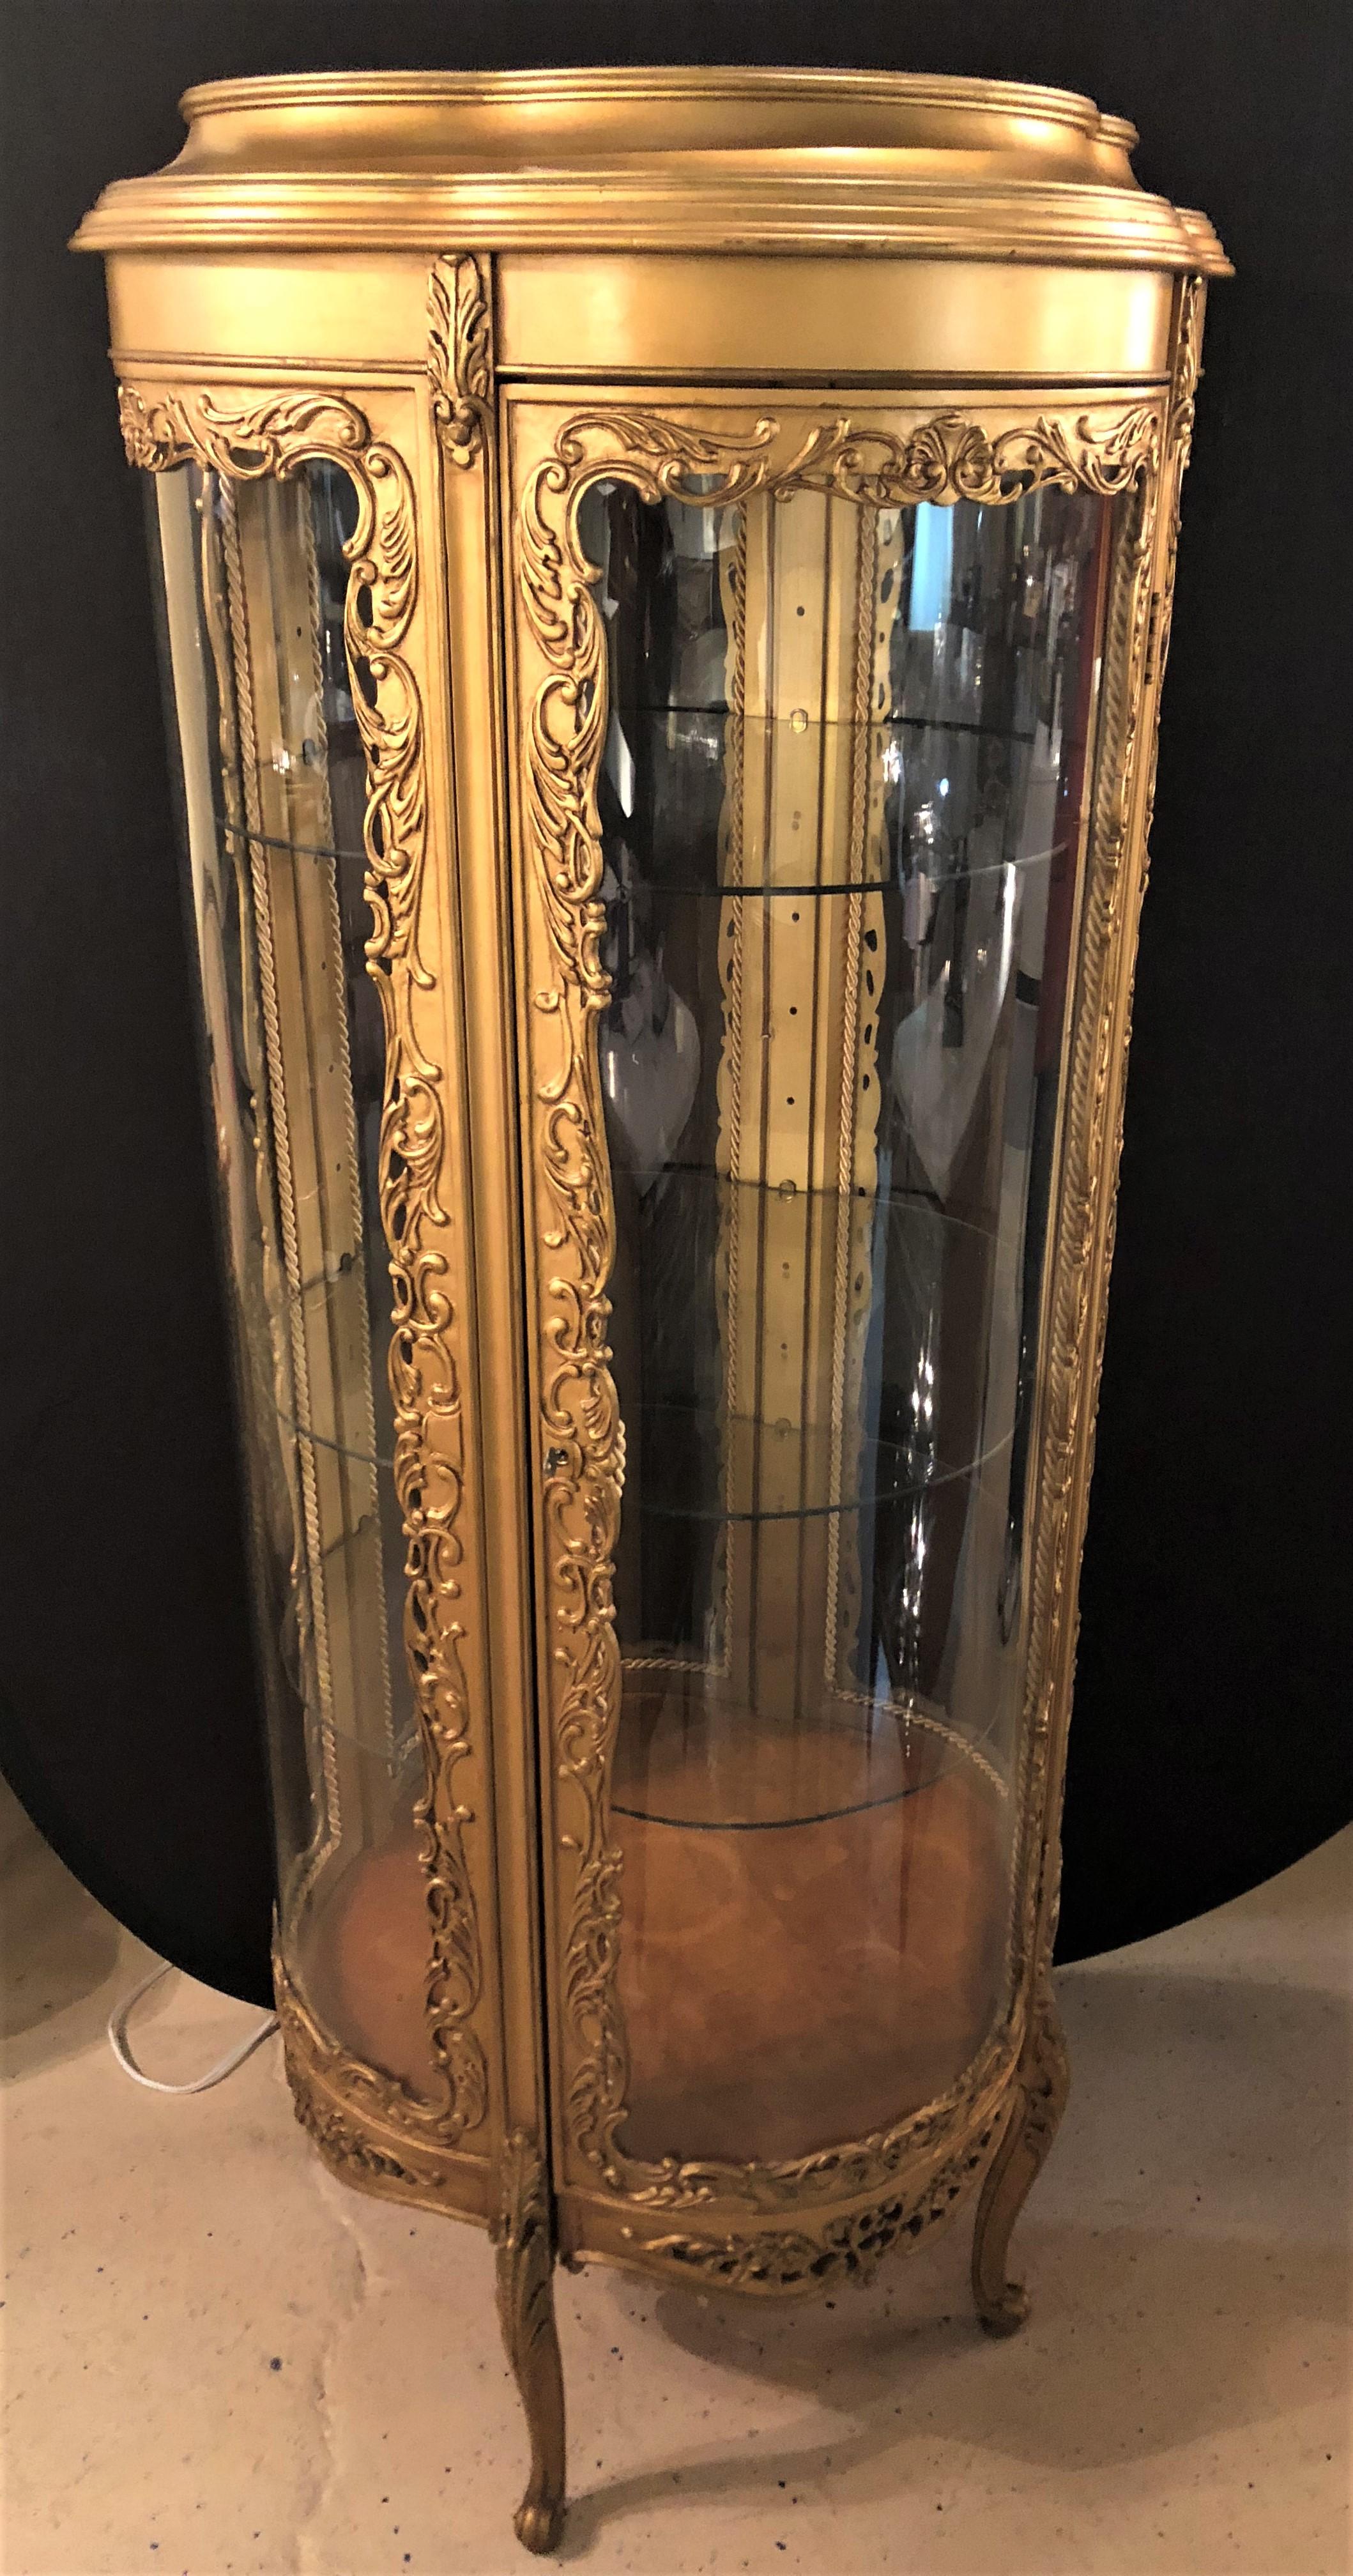 Eine wunderbare Louis XV Stil Klee kreisförmigen vergoldetem Holz beleuchtet curio Vitrine Vitrine. Dieses wunderschöne Curio ist innen beleuchtet und verfügt über drei verstellbare Einlegeböden in runder Serpentinenform. Die doppelte Kleeblattform